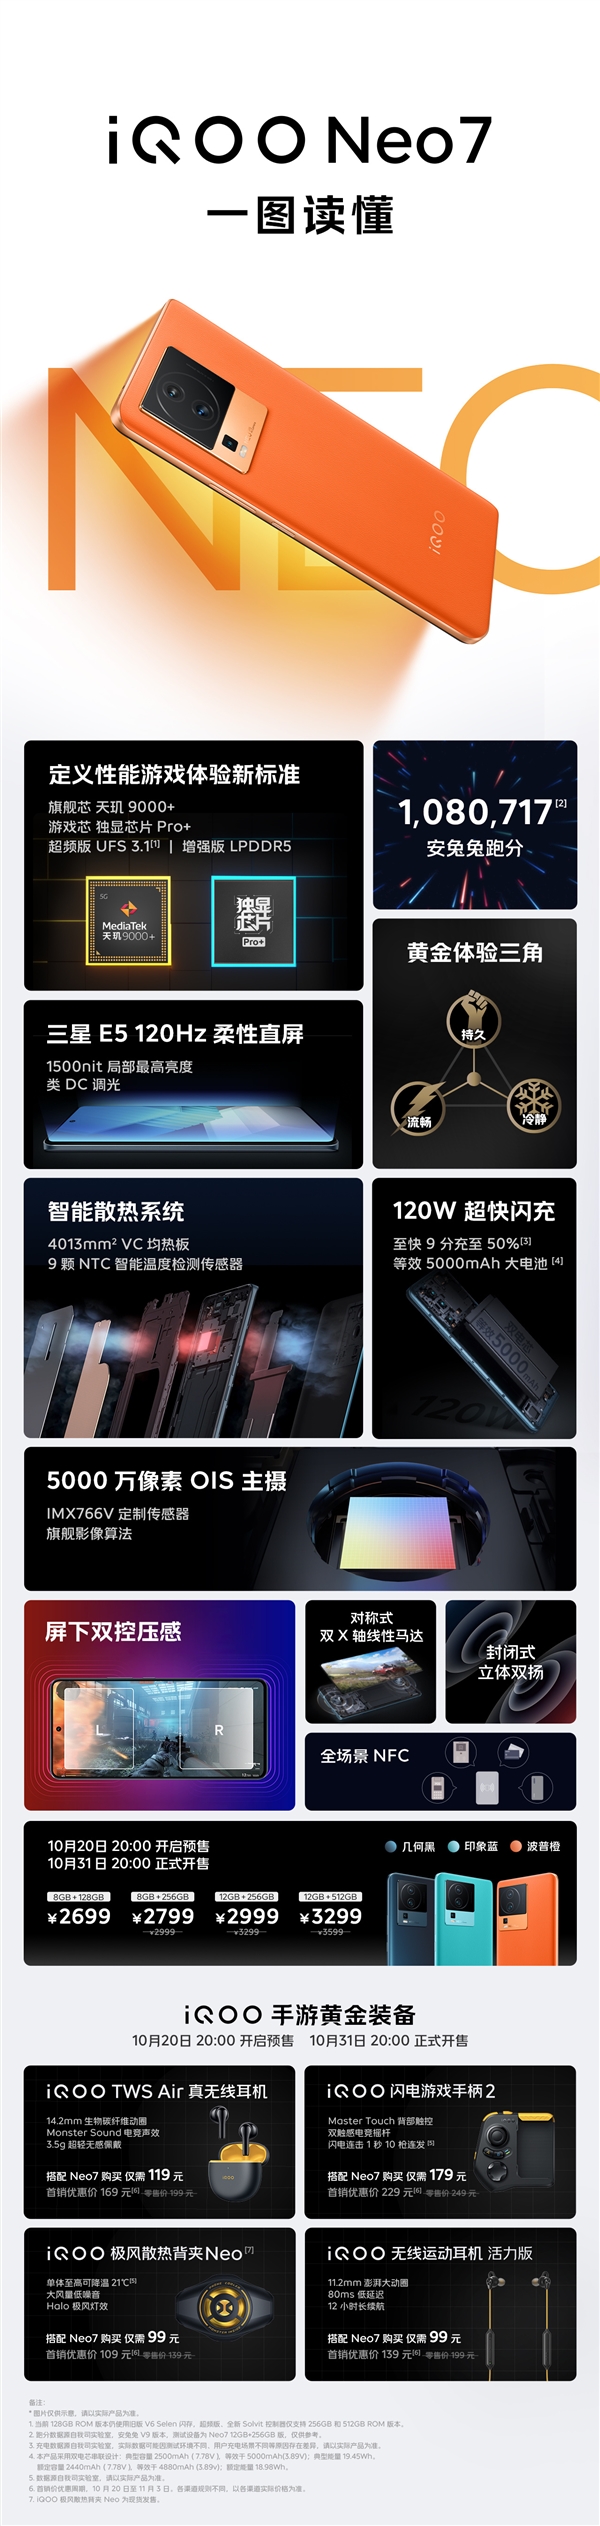 一图了解iQOO Neo7：同价位唯一一款天玑9000+手机 2699元